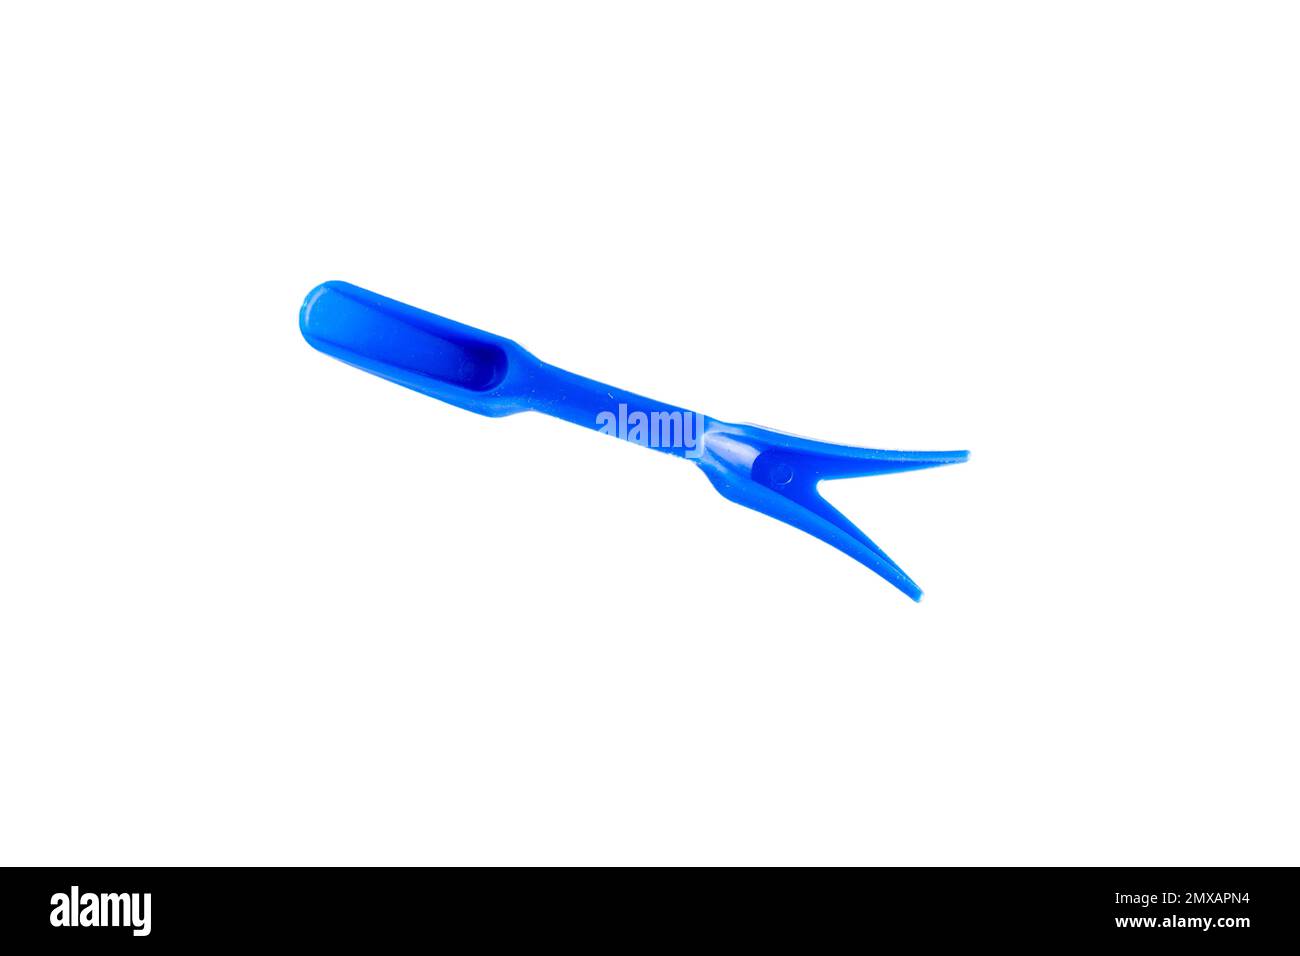 Forchetta in plastica blu per sollevatore di cactus o succulents con una pala piccola sull'altro utensile da giardinaggio Foto Stock